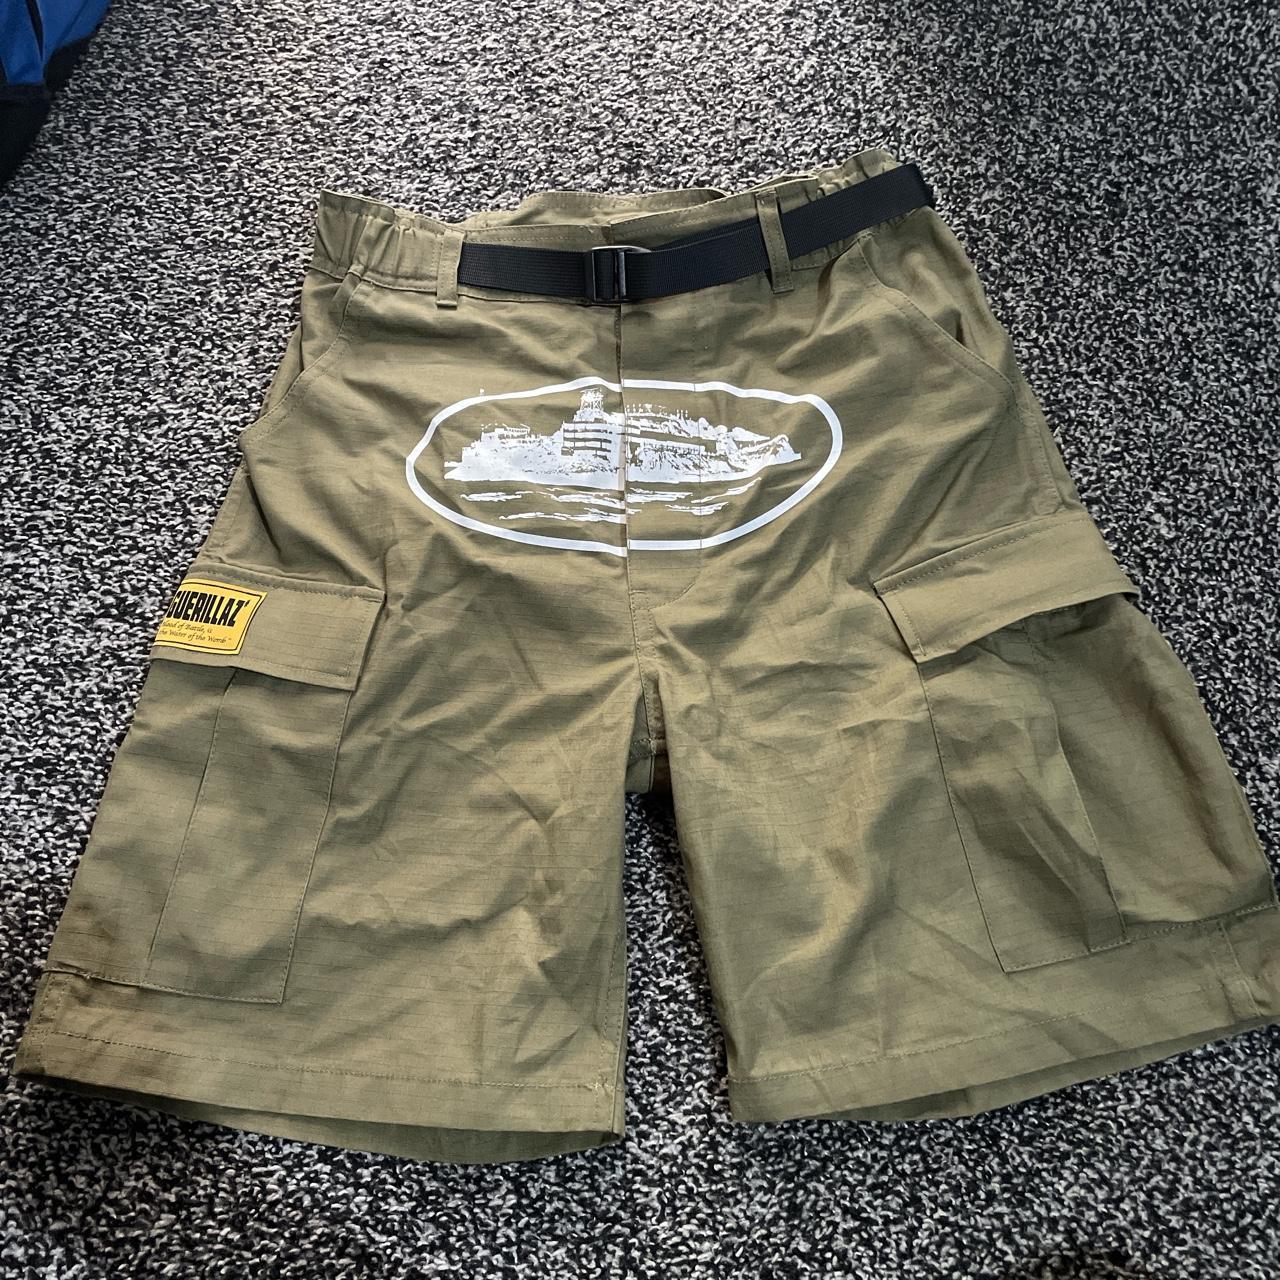 Cortiez cargo shorts Combat shorts XS Khaki... - Depop